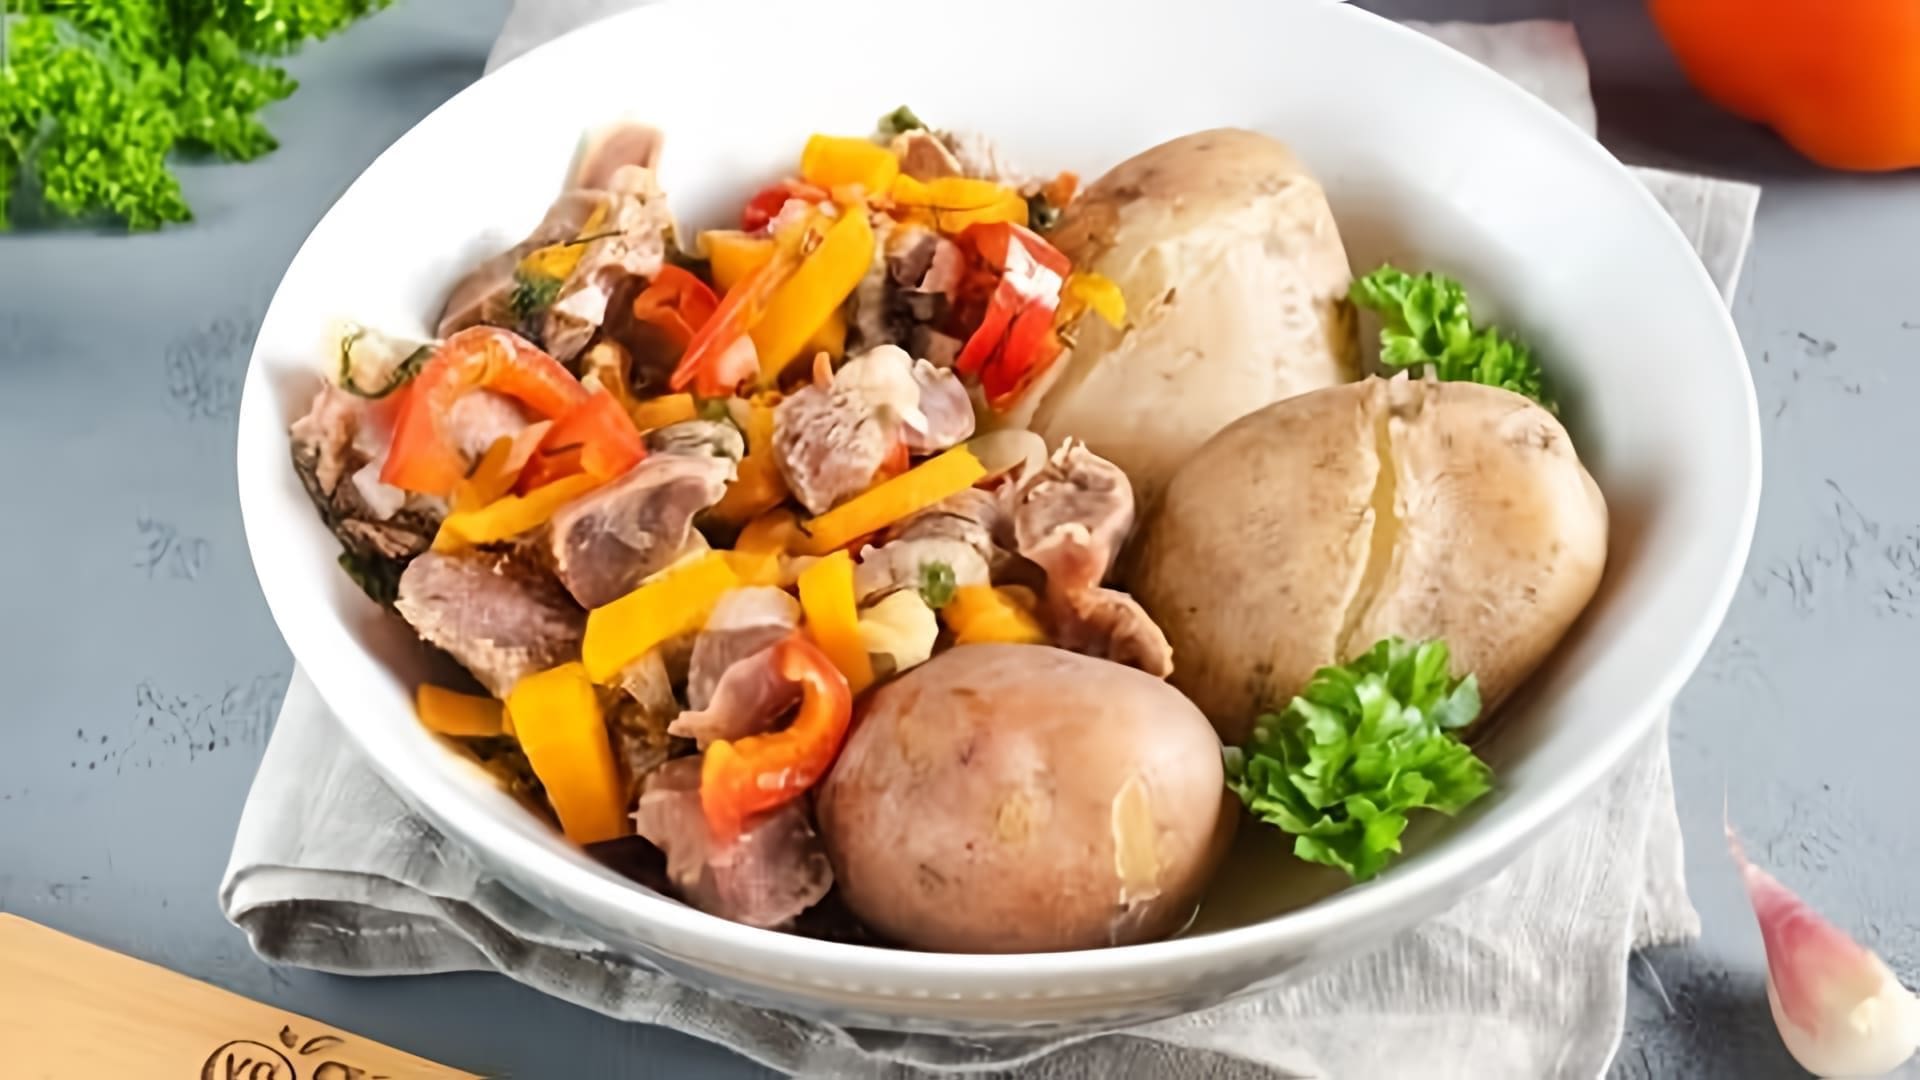 В этом видео демонстрируется рецепт приготовления куриных желудков с овощами